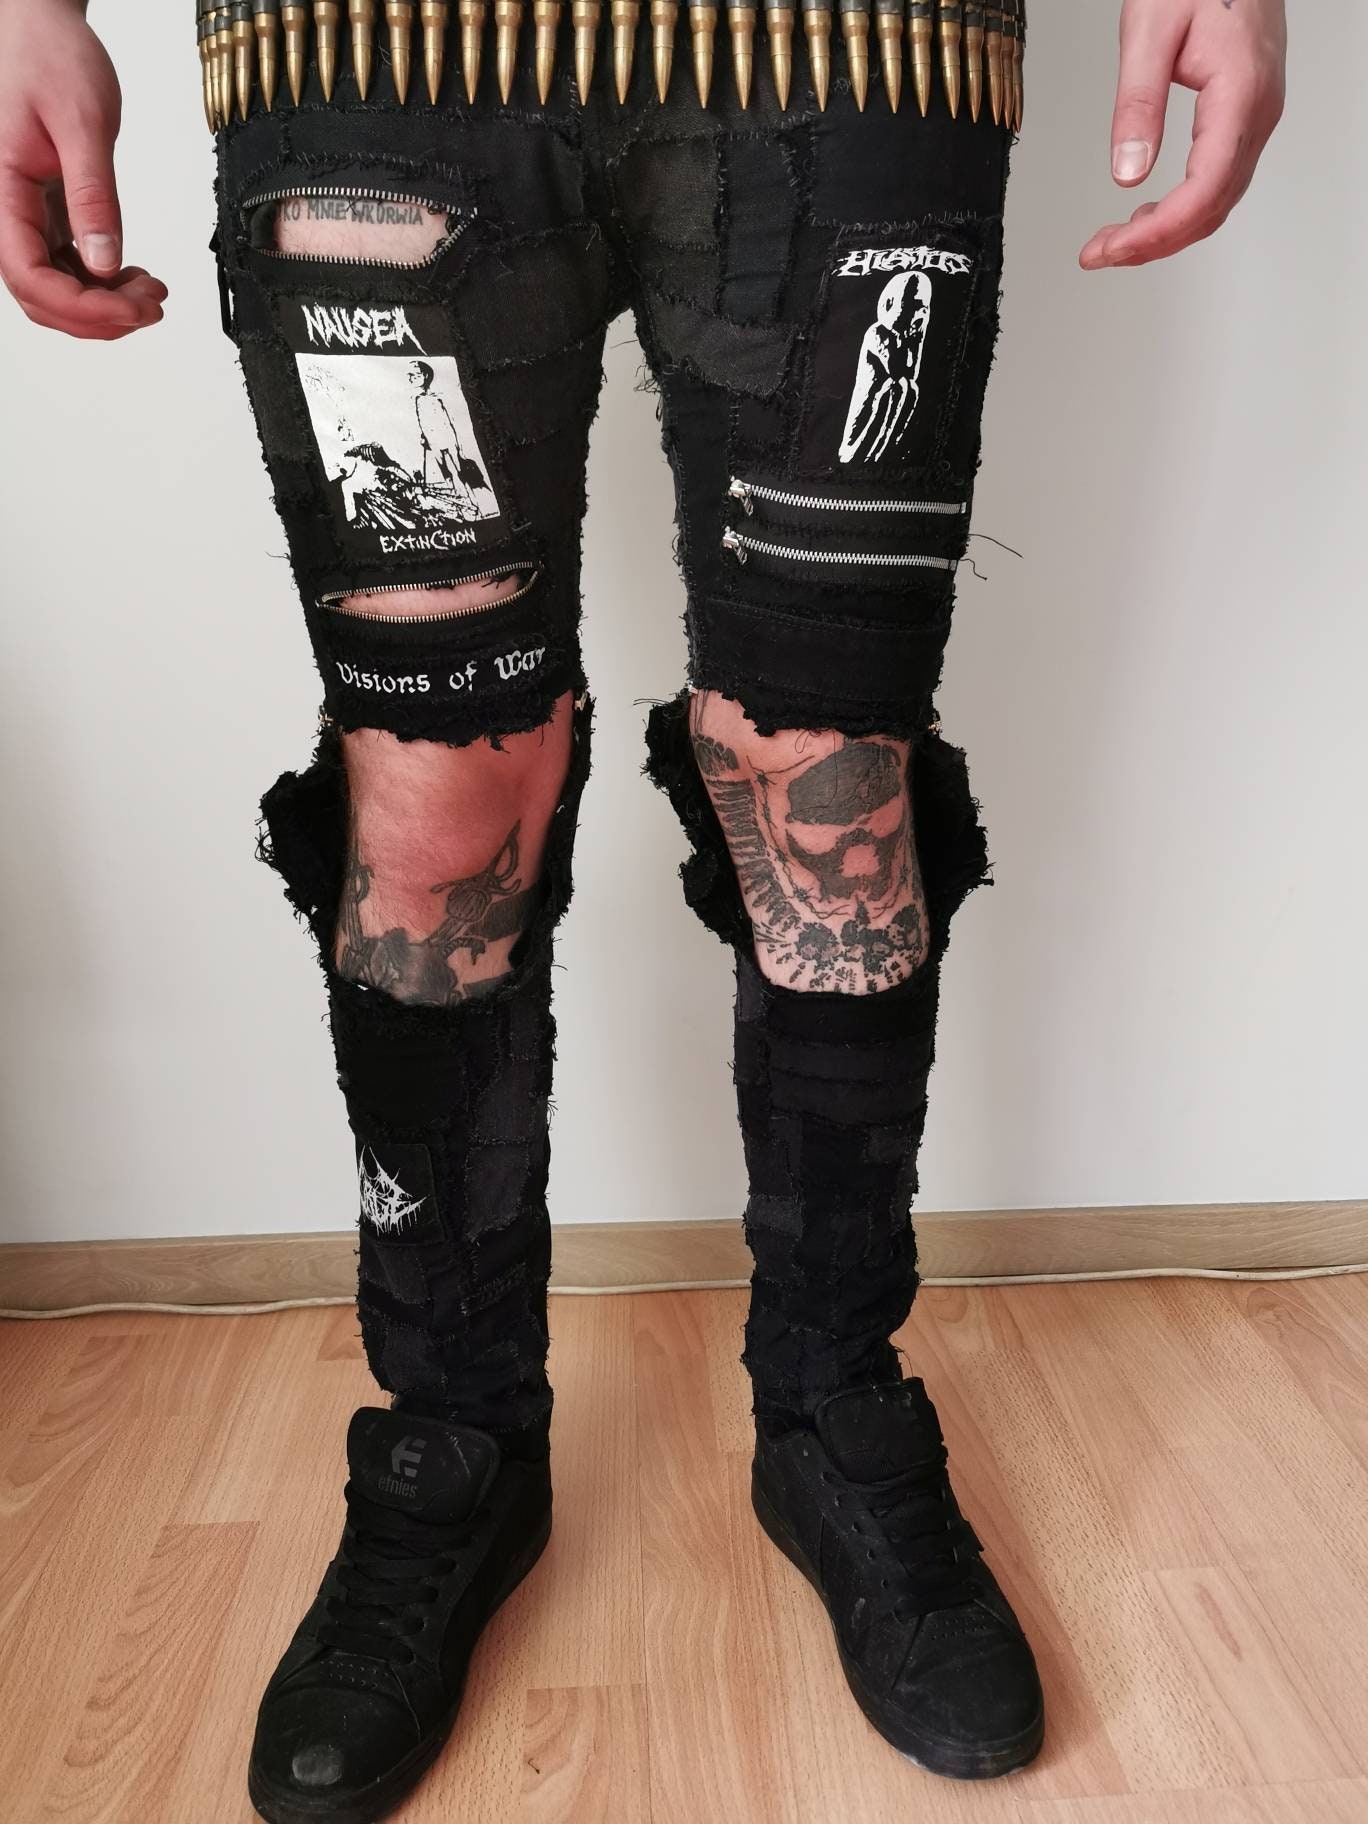 Punk/metal crust pants with a hint of rap. : r/BattleJackets